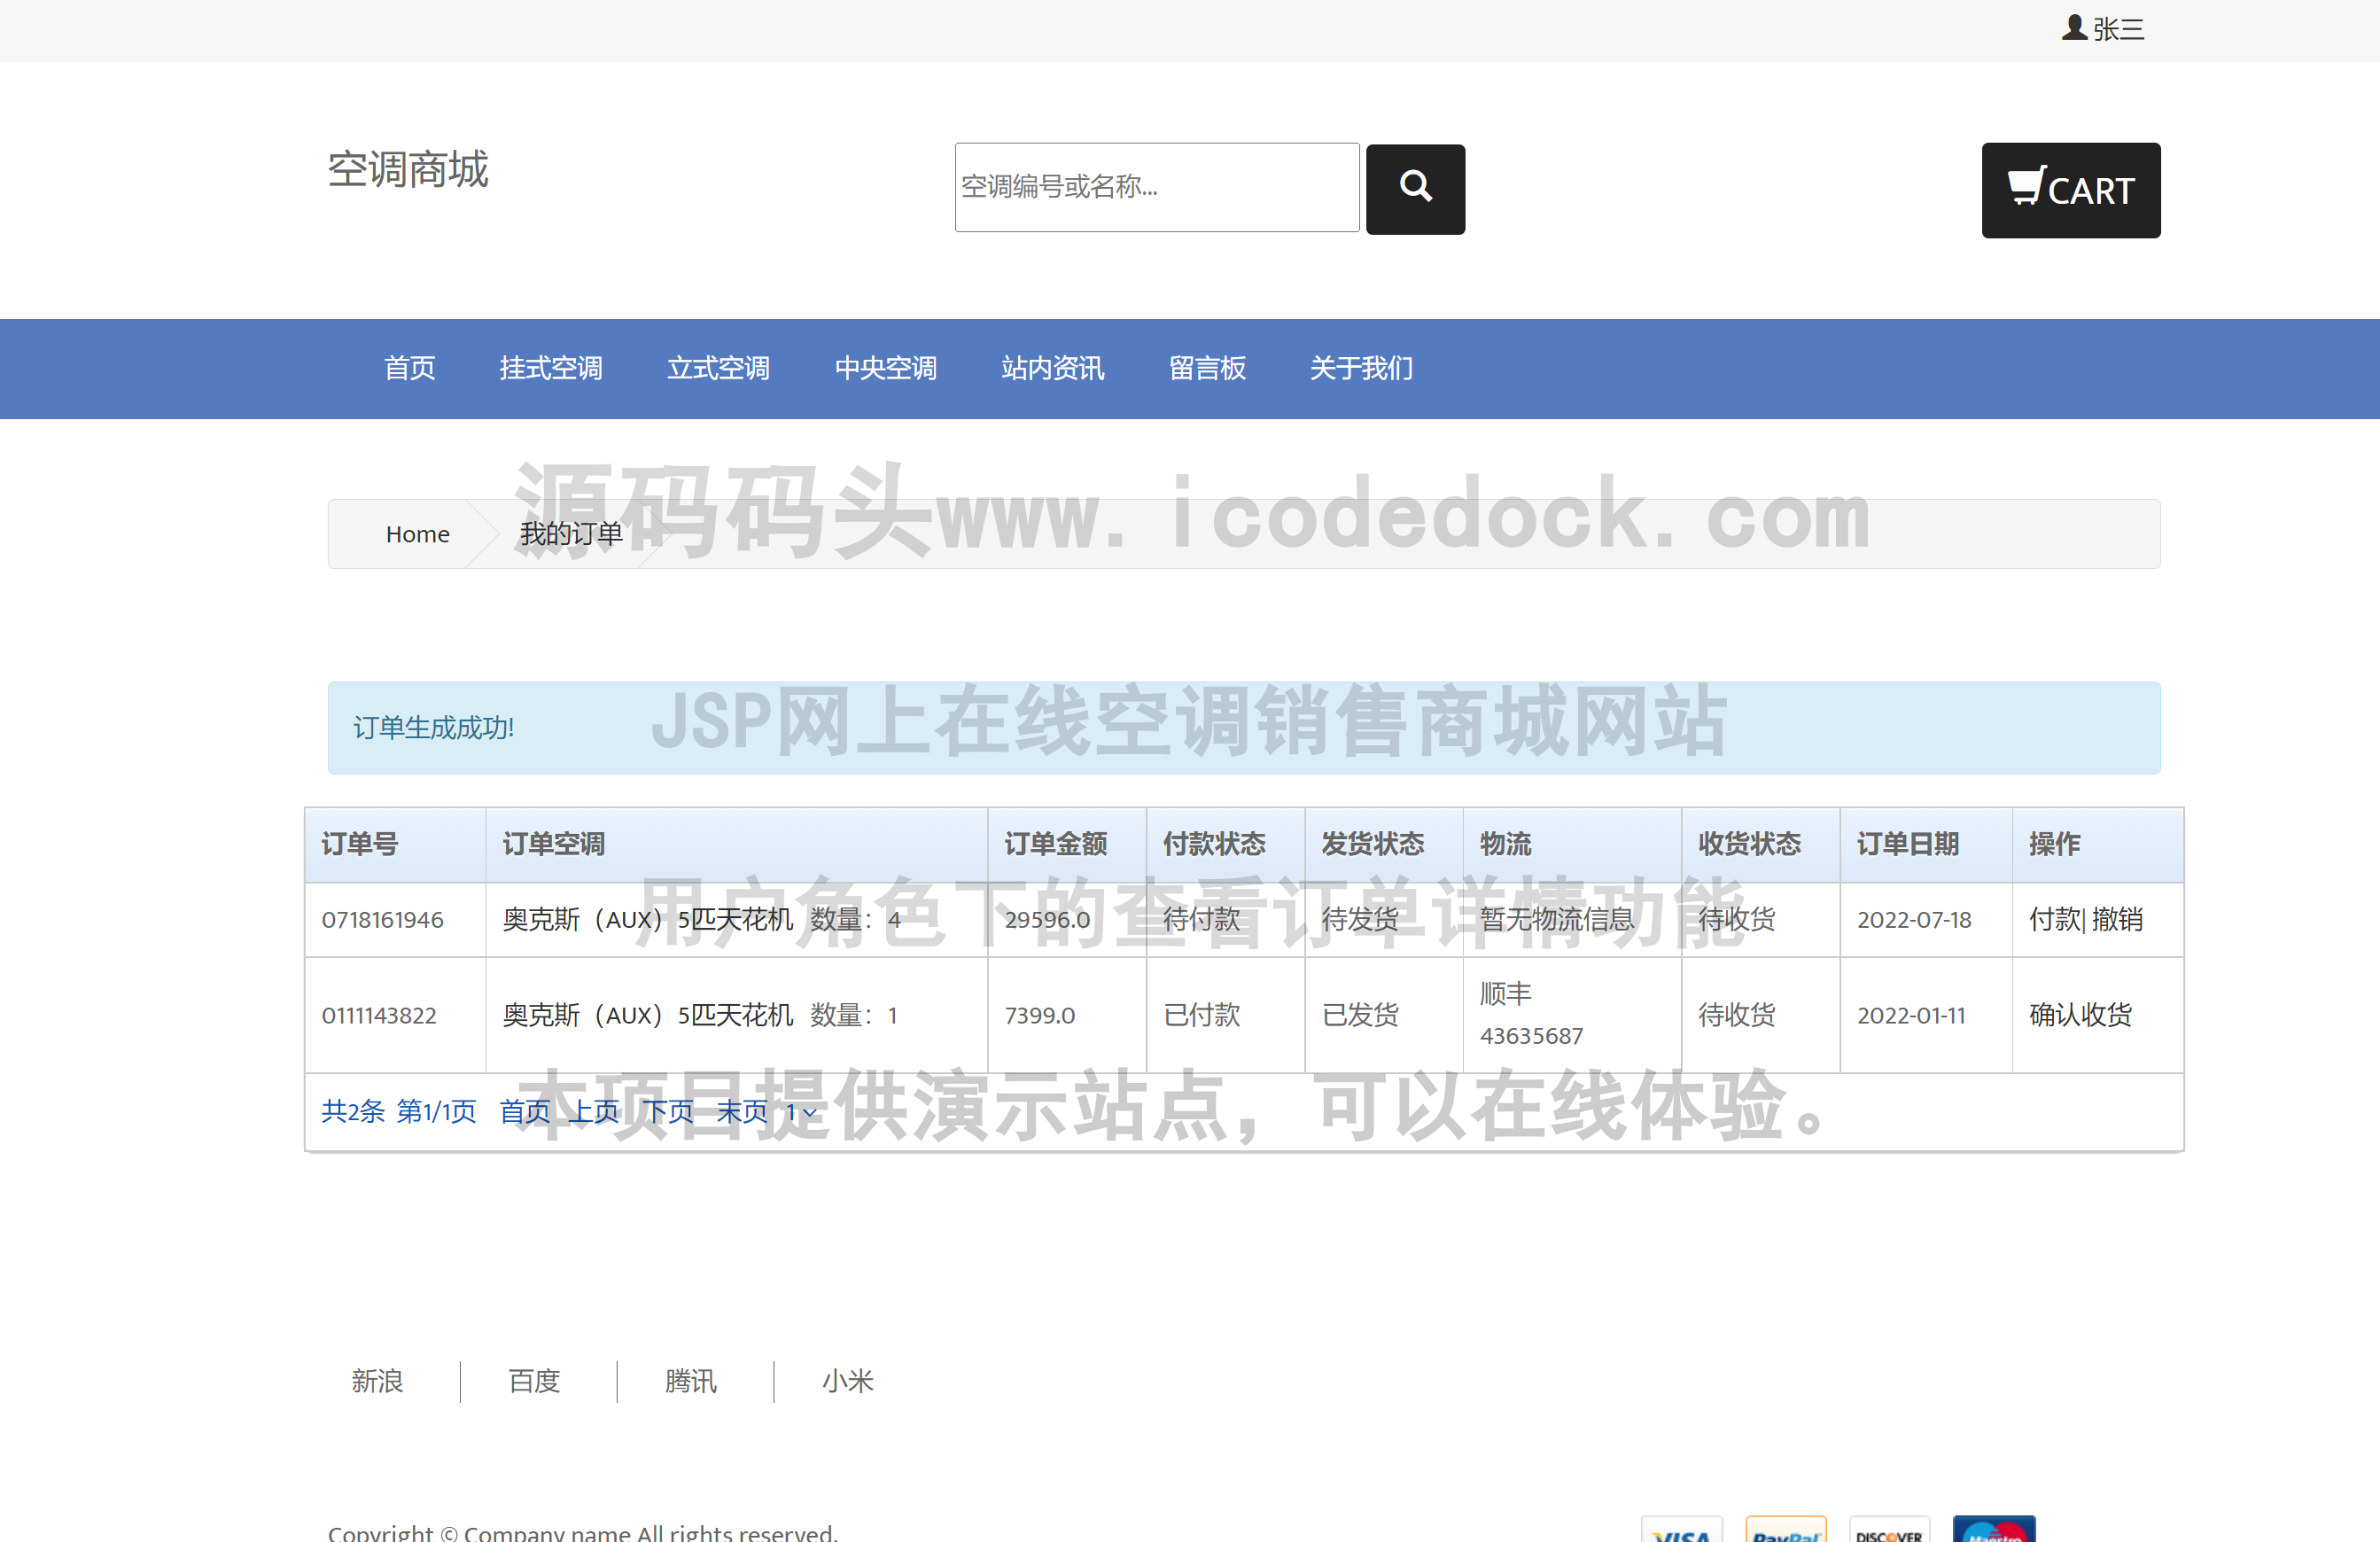 源码码头-JSP网上在线空调销售商城网站-用户角色-查看订单详情